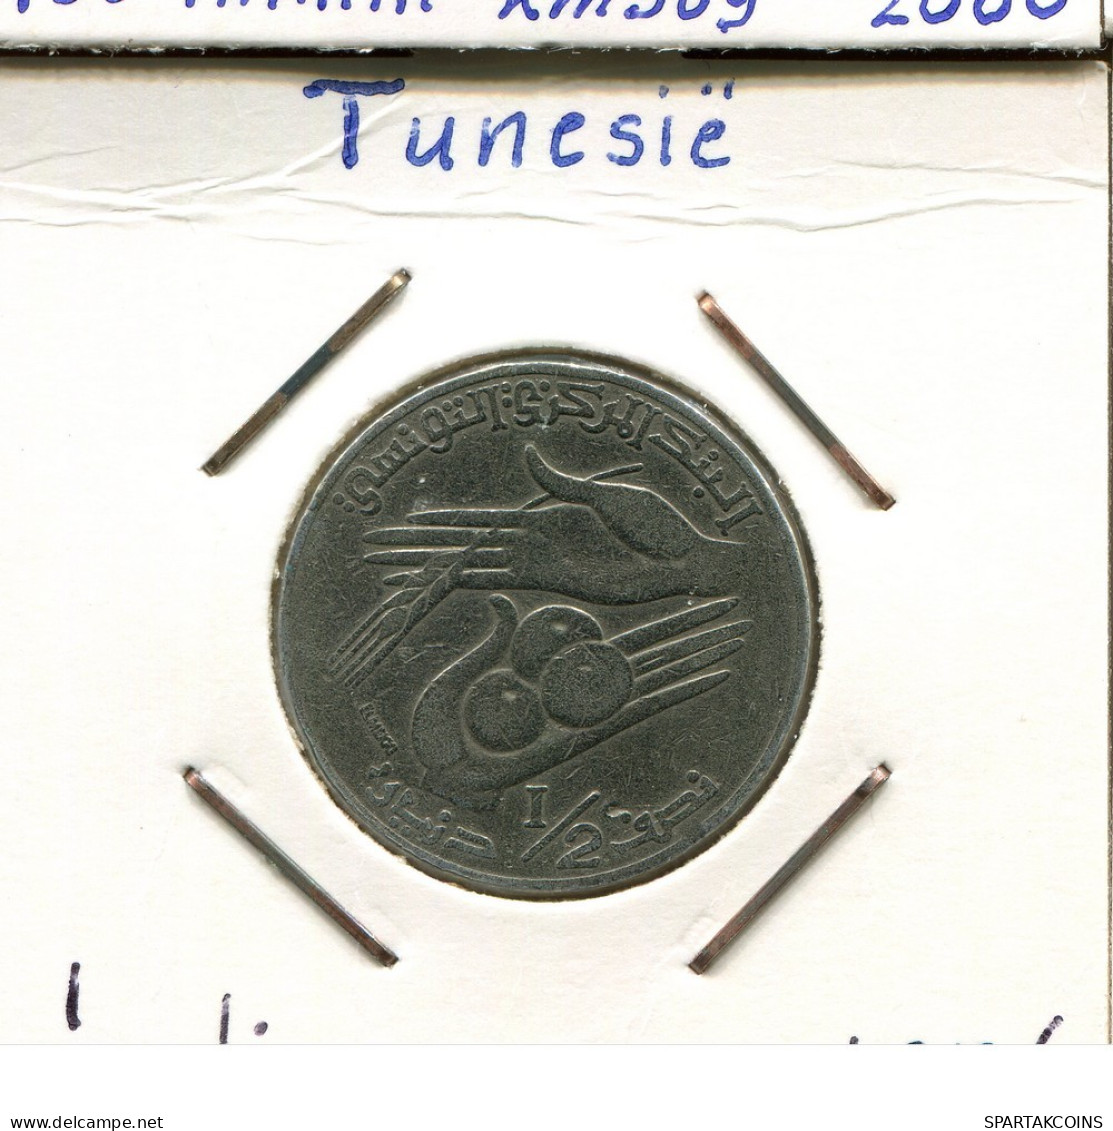 1/2 DINAR 1976 TÚNEZ TUNISIA Moneda #AP835.2.E.A - Tunesië